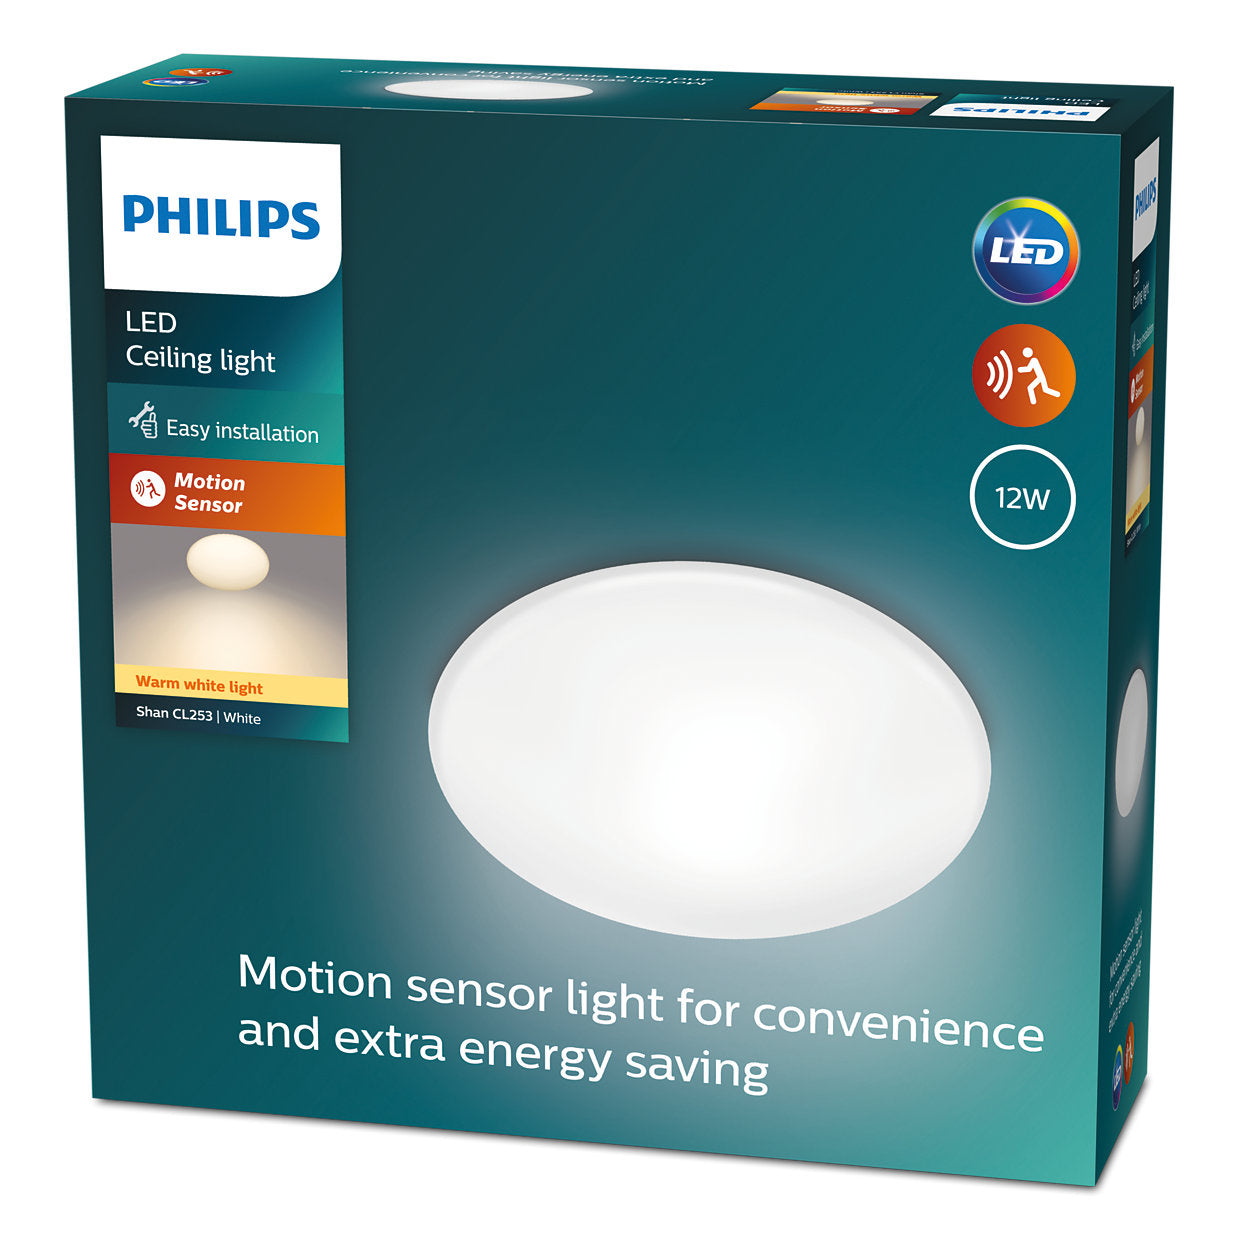 Philips Shan CL253 LED Motion Sensor Ceiling Light, White